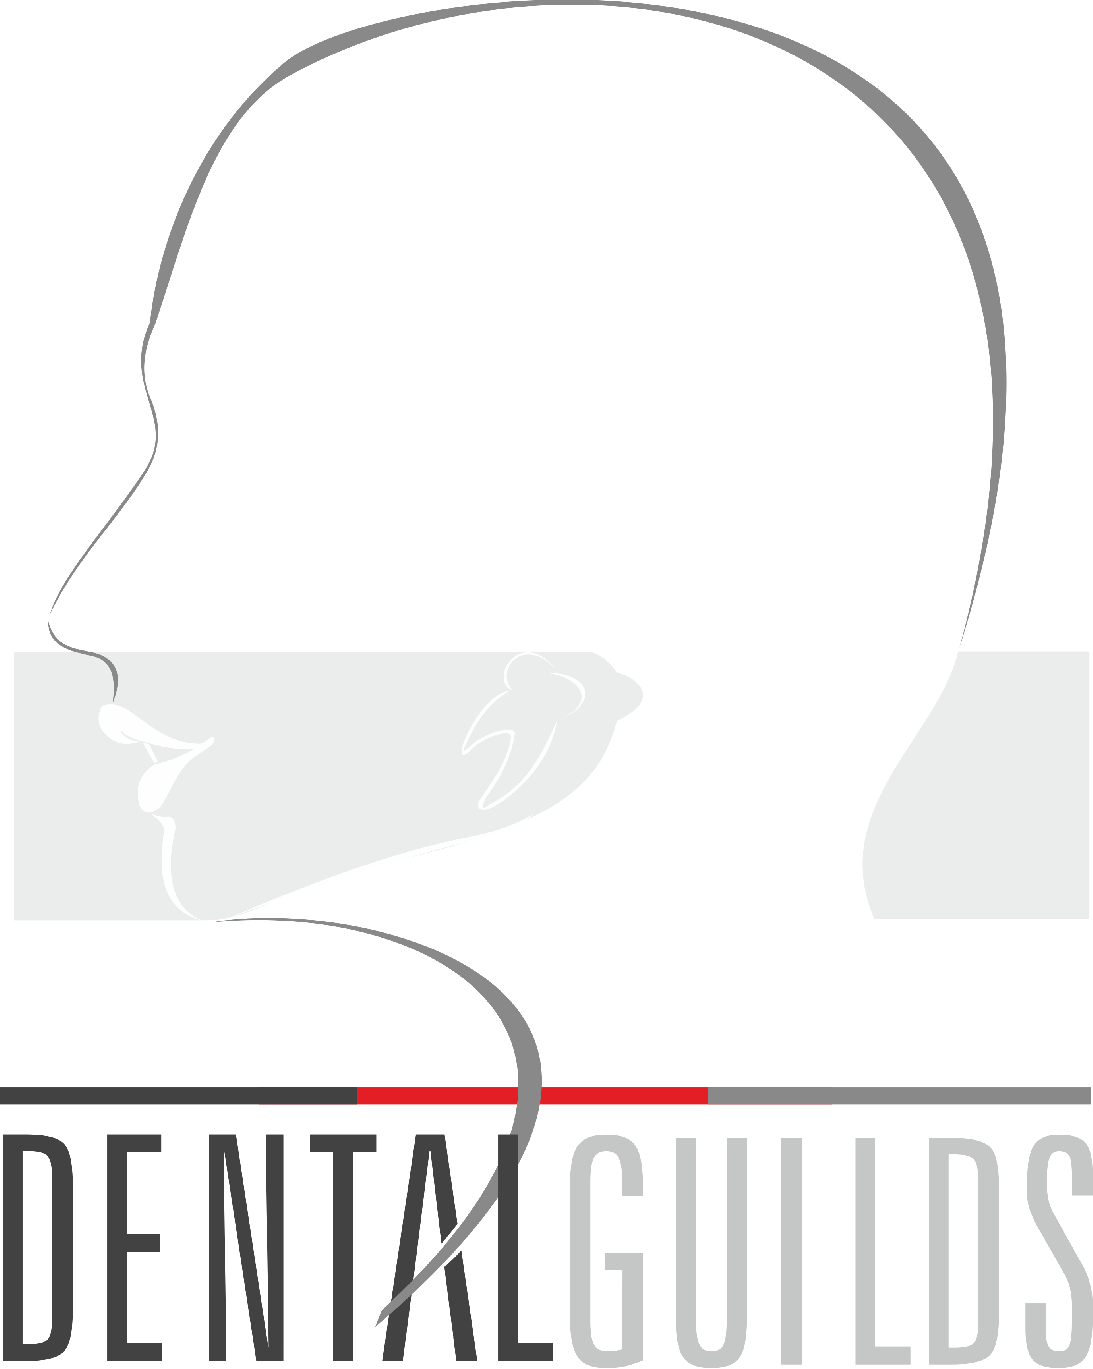 Dental Guilds